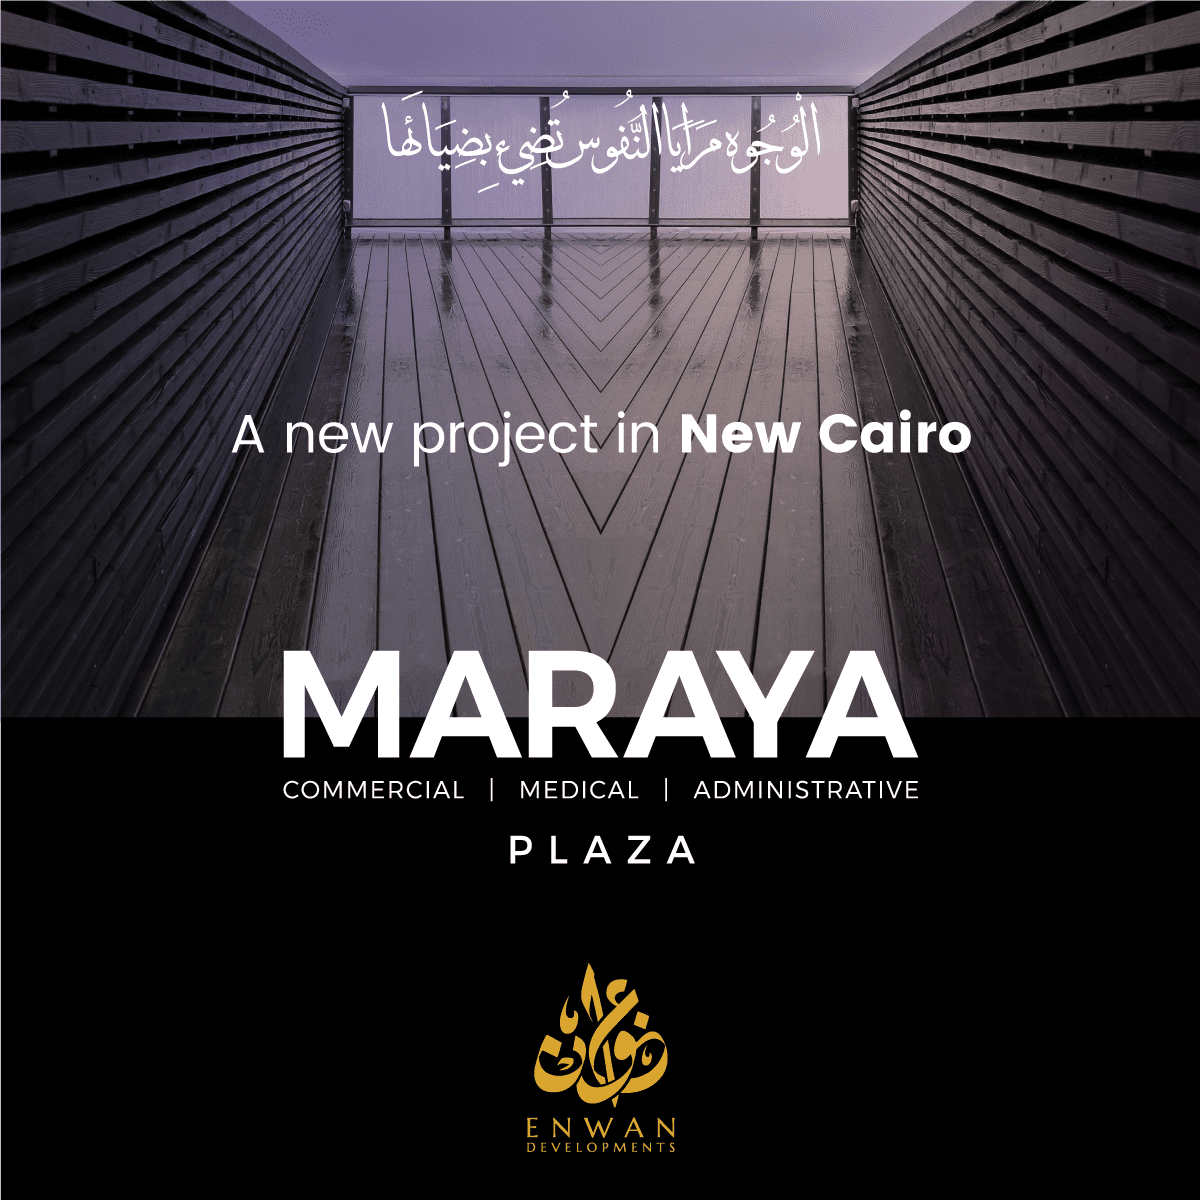 Maraya Plaza New Cairo